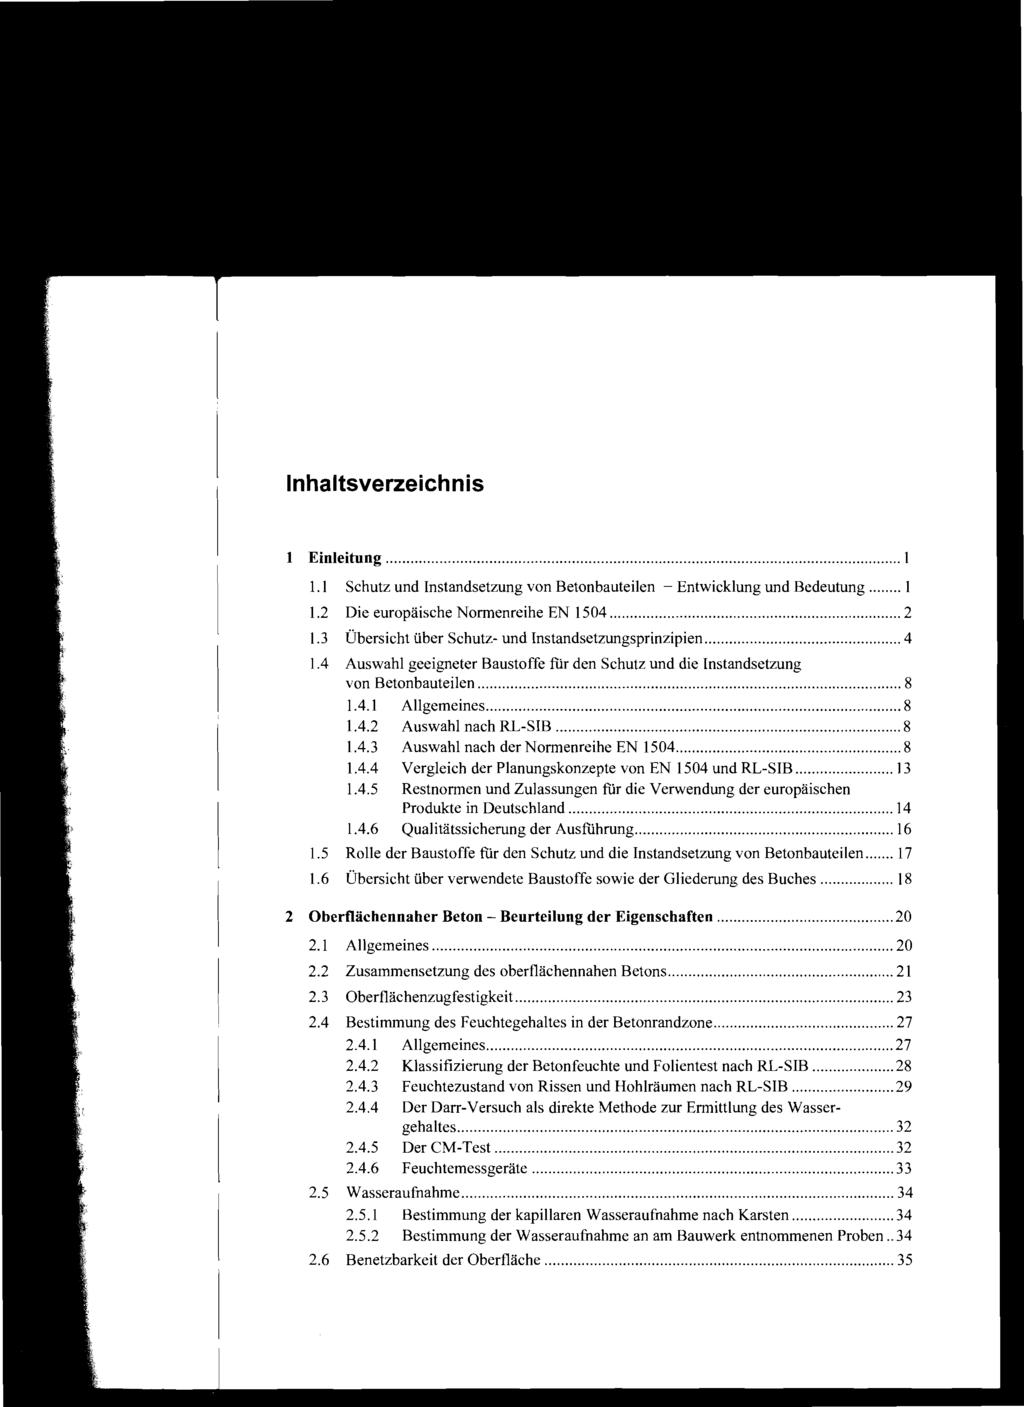 Inhaltsverzeichnis 1 Einleitung I 1.1 Schutz und Instandsetzung von Betonbauteiien - Entwicklung und Bedeutung 1 1.2 Die europäische Normenreihe EN 1504 2 1.